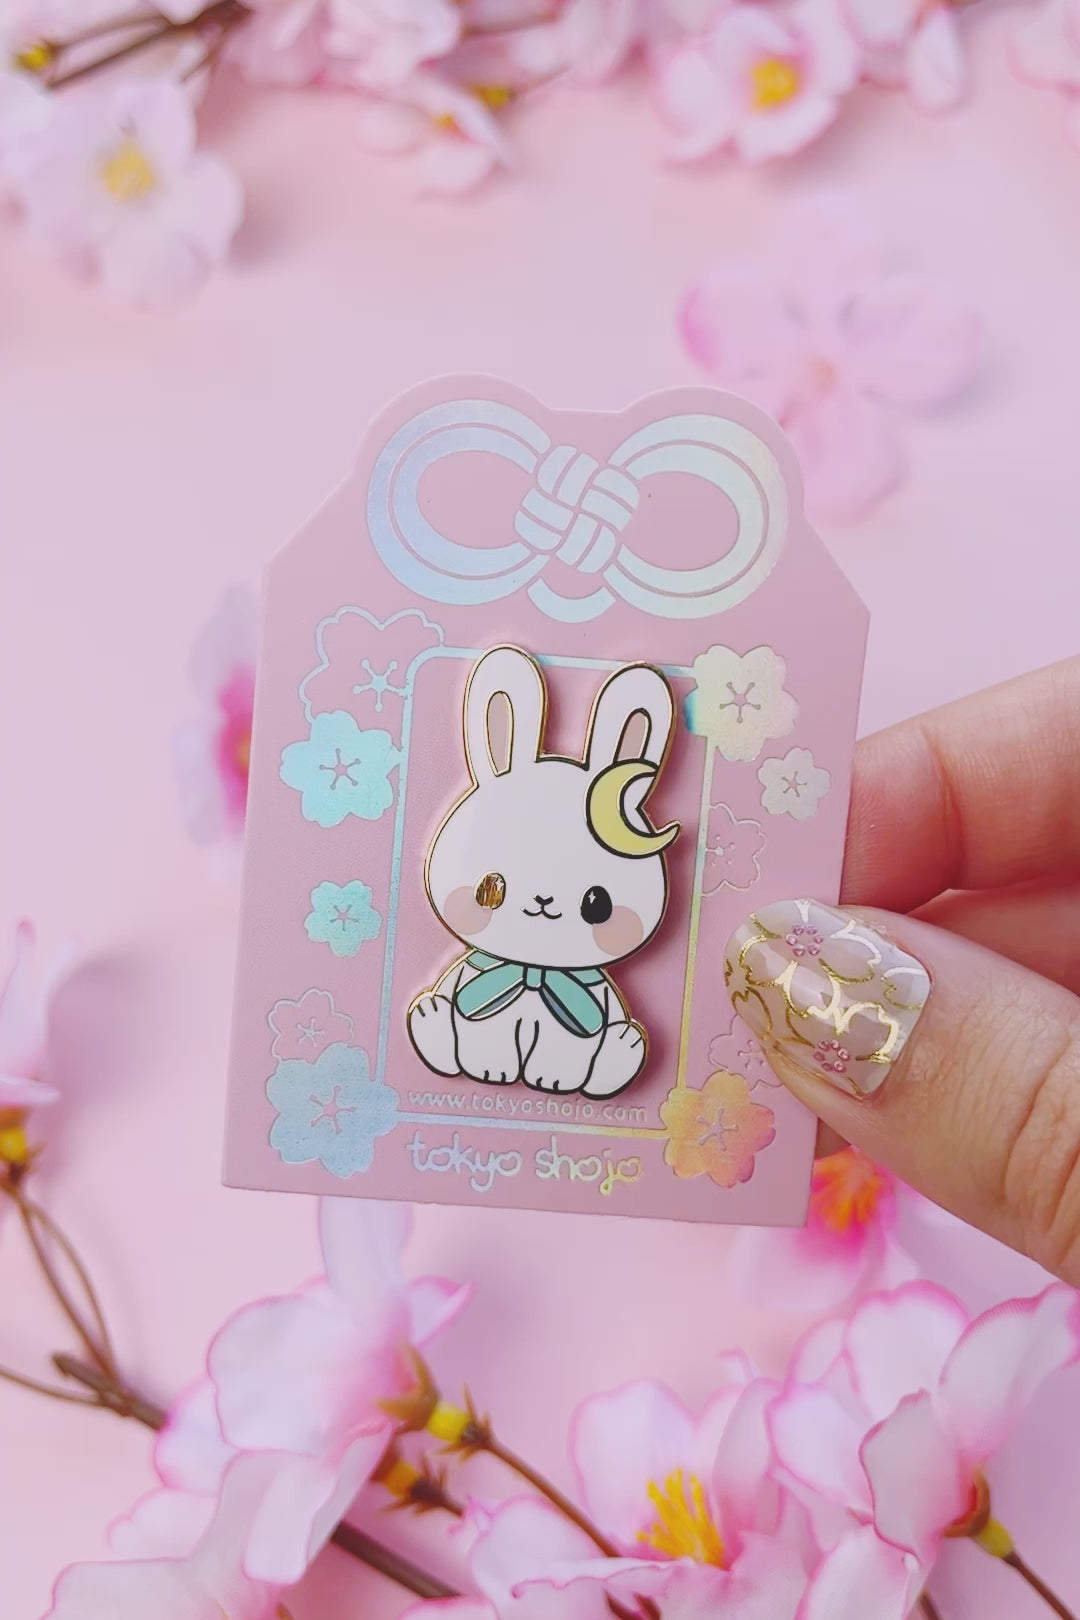 [Tokyo Shojo] Tsuki the Bunny Pin